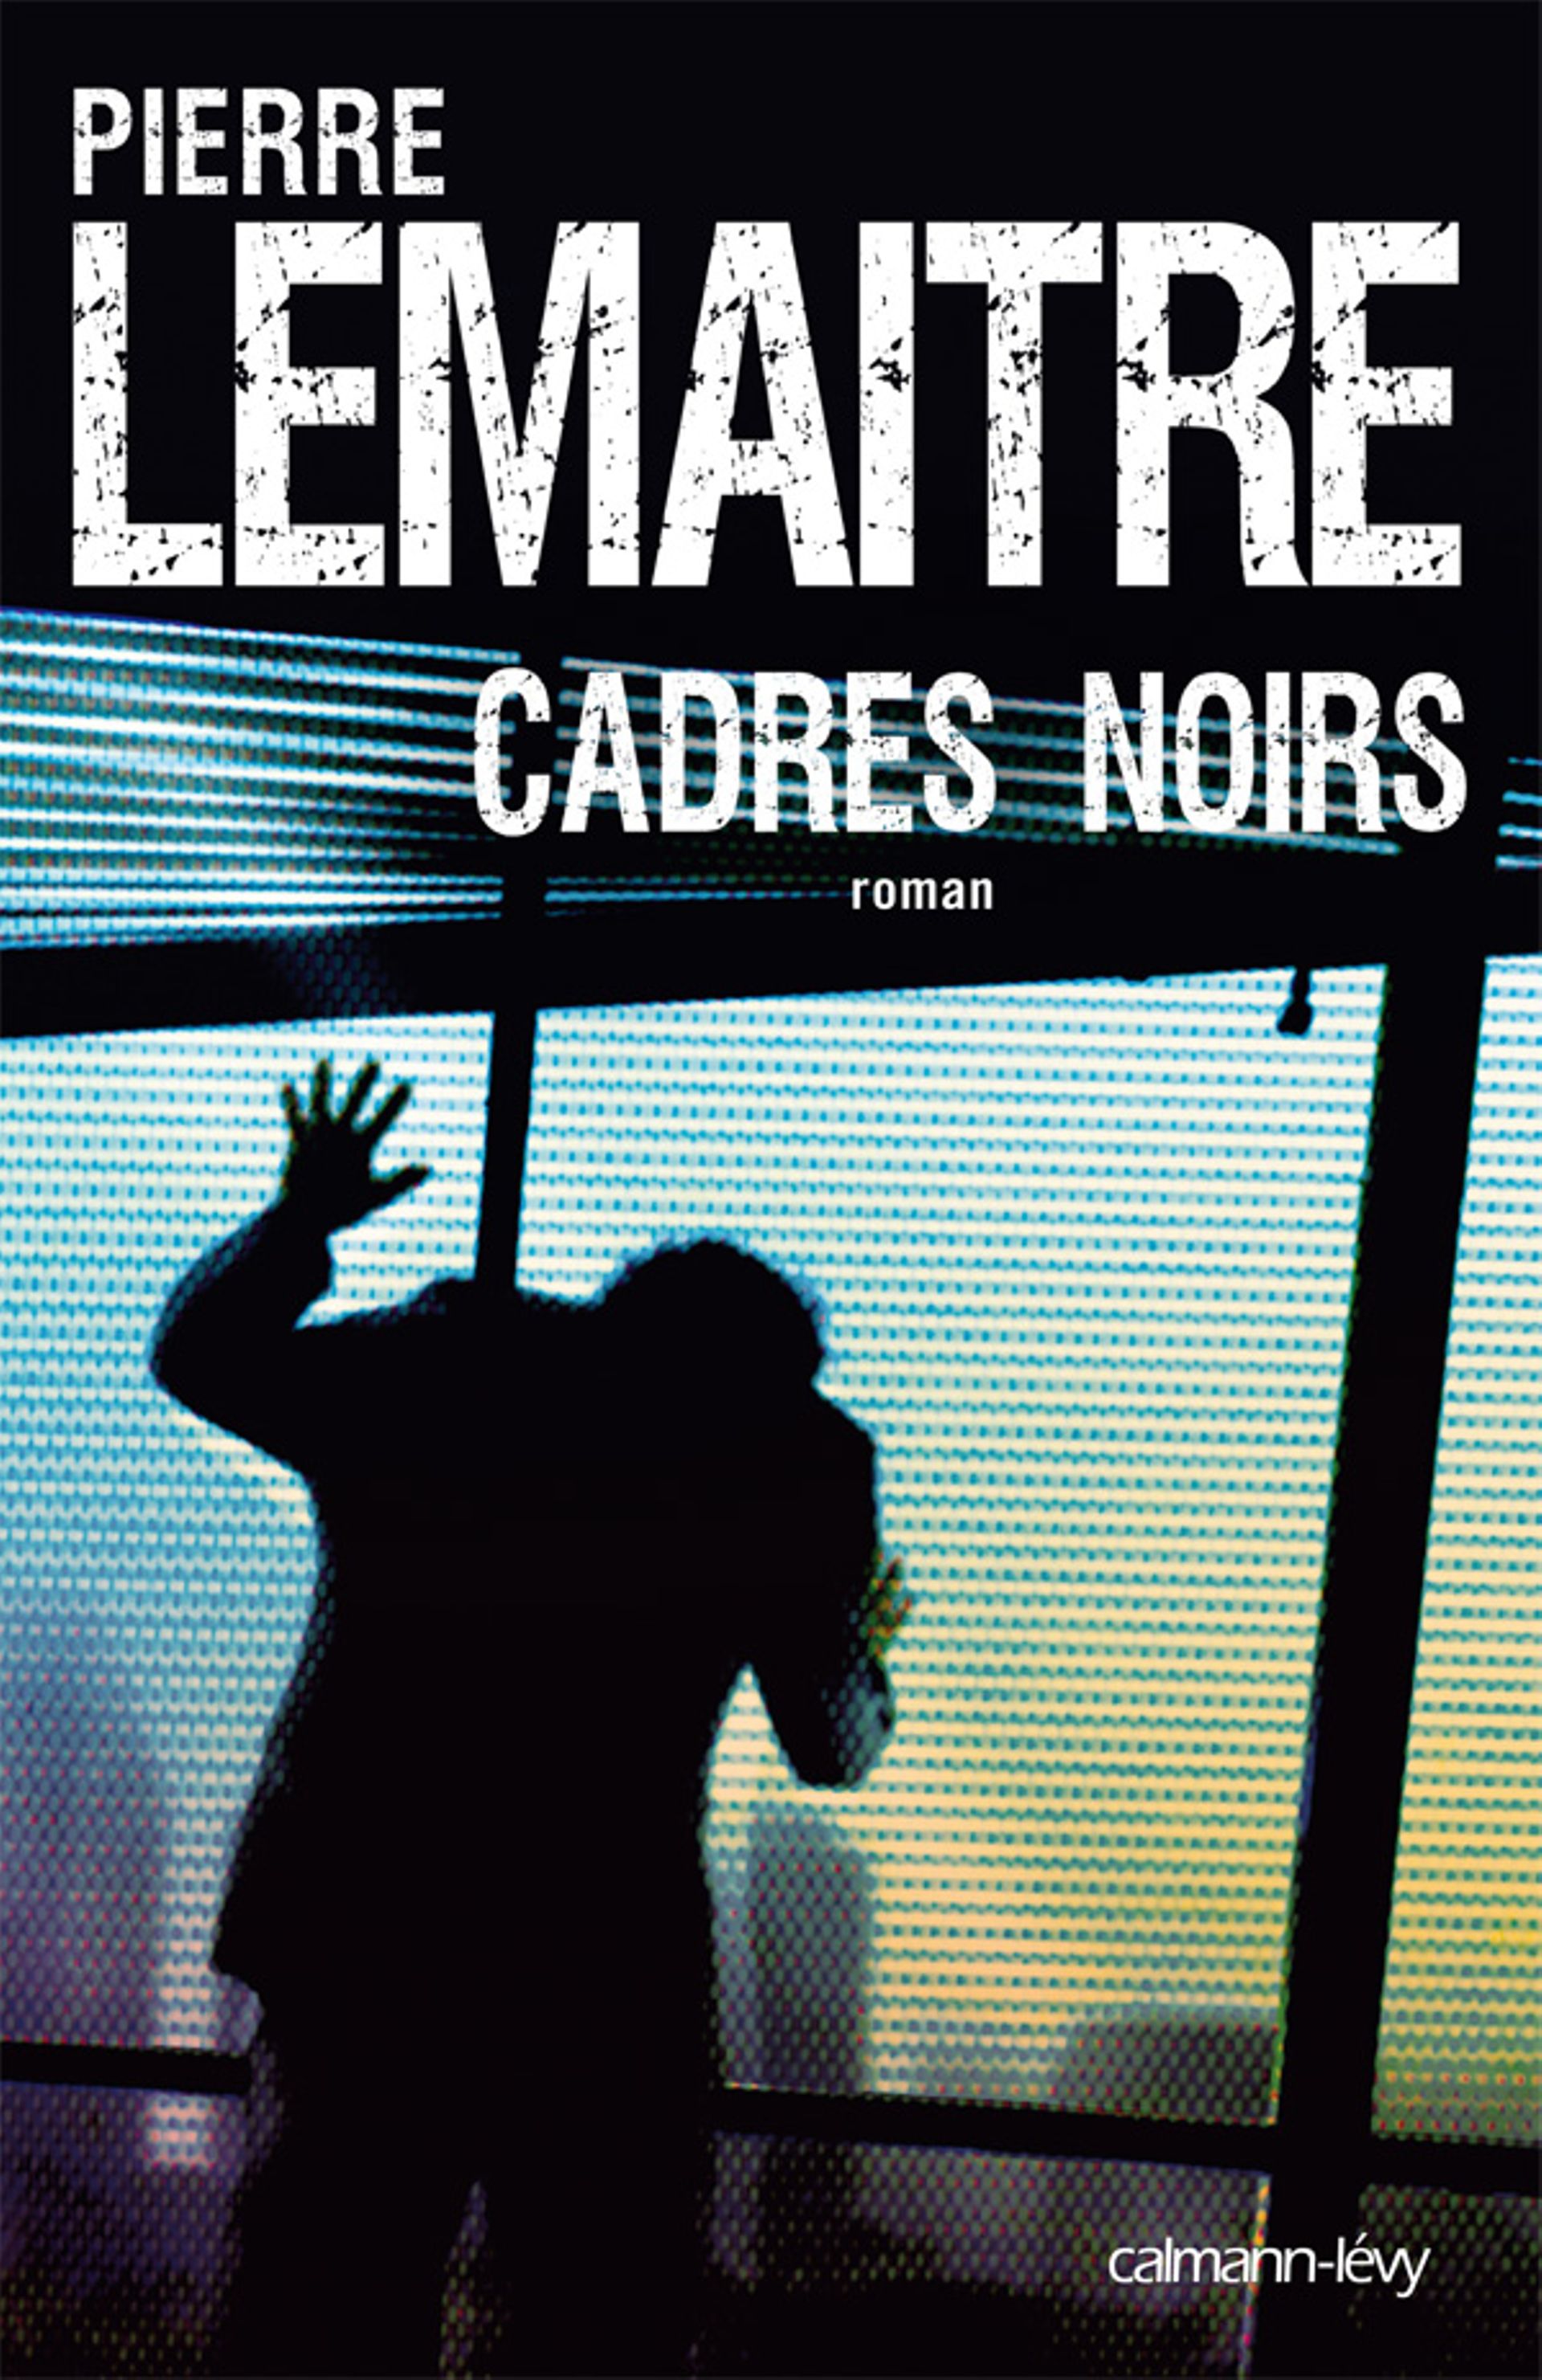 La couverture du roman de Pierre Lemaitre, "Cadres noirs"